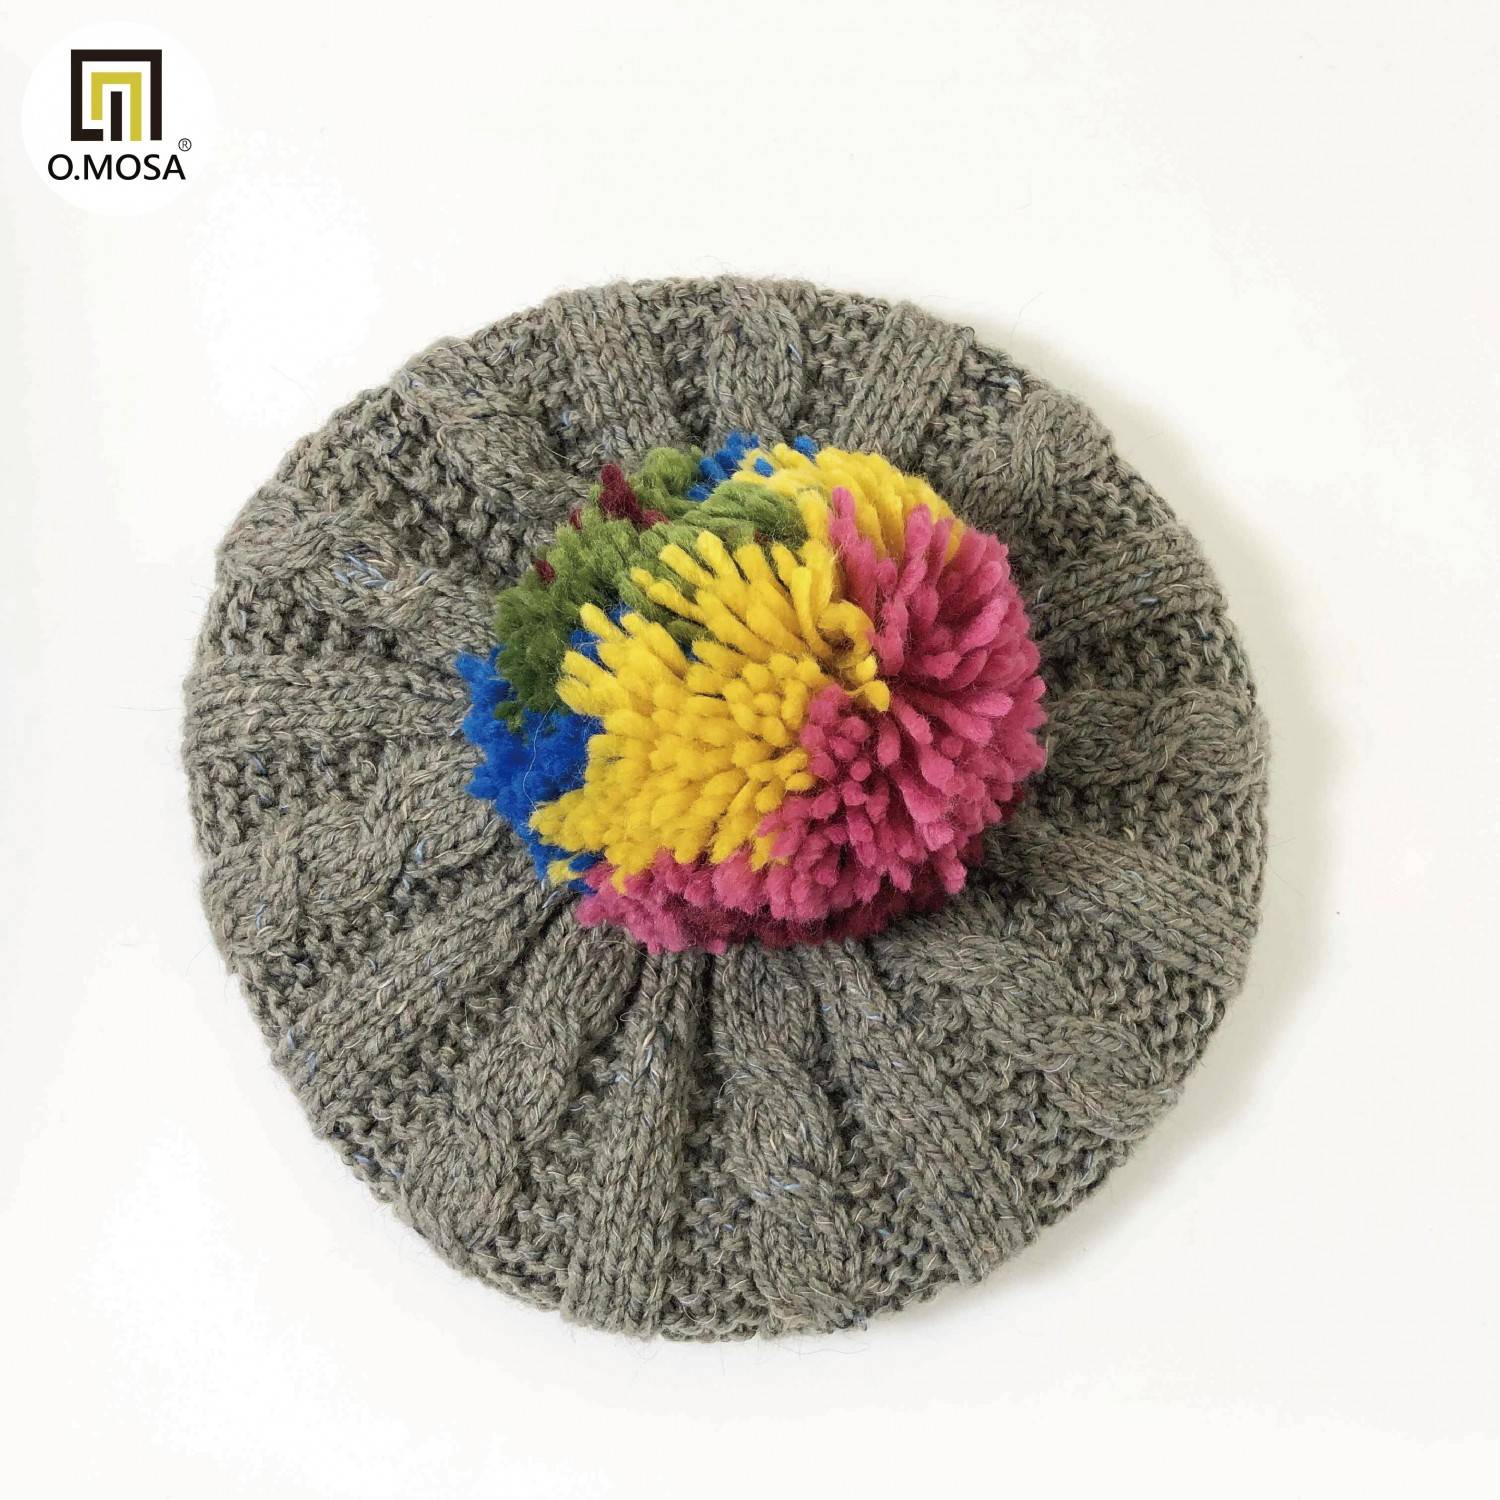 O.MOSA 秘魯羊駝毛多彩造型毛球可機洗貝蕾帽(多彩灰)